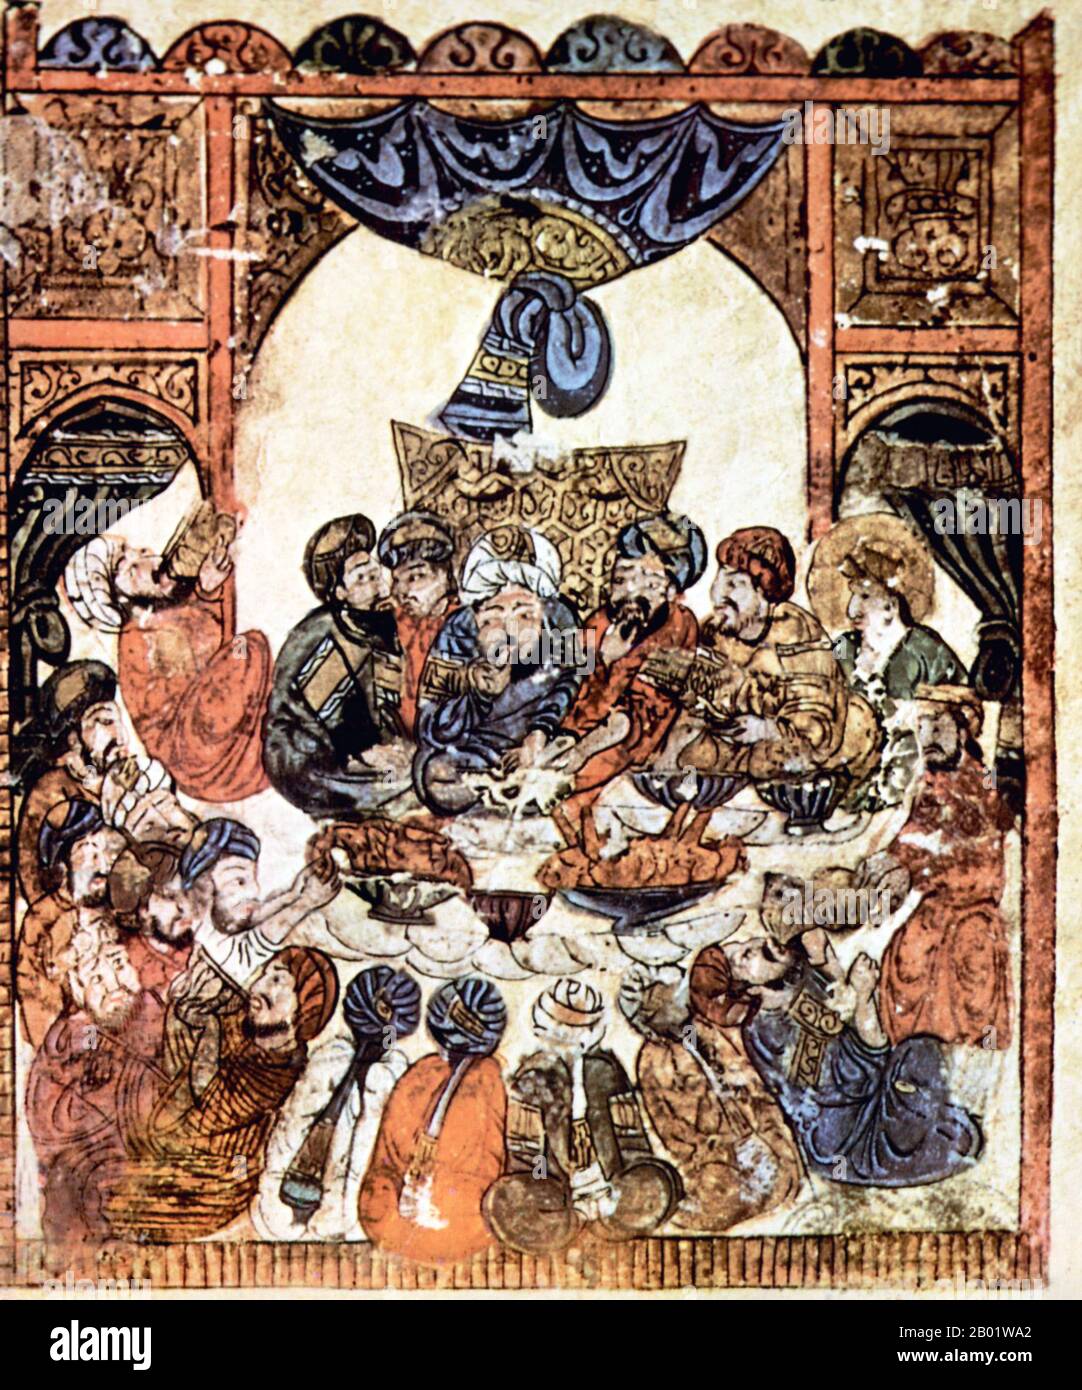 Iraq: Un banchetto di nozze. Pittura in miniatura dal 'Maqam' o 'Assemblea' di al-Hariri di Bassora, c. 1225-1235. Le Maqāma (letteralmente "assemblee") sono un genere letterario arabo (originariamente) di prosa rima con intervalli di poesia in cui la stravaganza retorica è evidente. Si dice che l'autore del X secolo Badī al-Zaman al-Hamadhāni abbia inventato la forma, che fu estesa da al-Hariri di Bassora nel secolo successivo. Entrambi gli autori maqāmāt si concentrano su figure ingannevoli le cui peregrinazioni e le cui gesta nel parlare alle assemblee dei potenti sono trasmesse da un narratore. Foto Stock